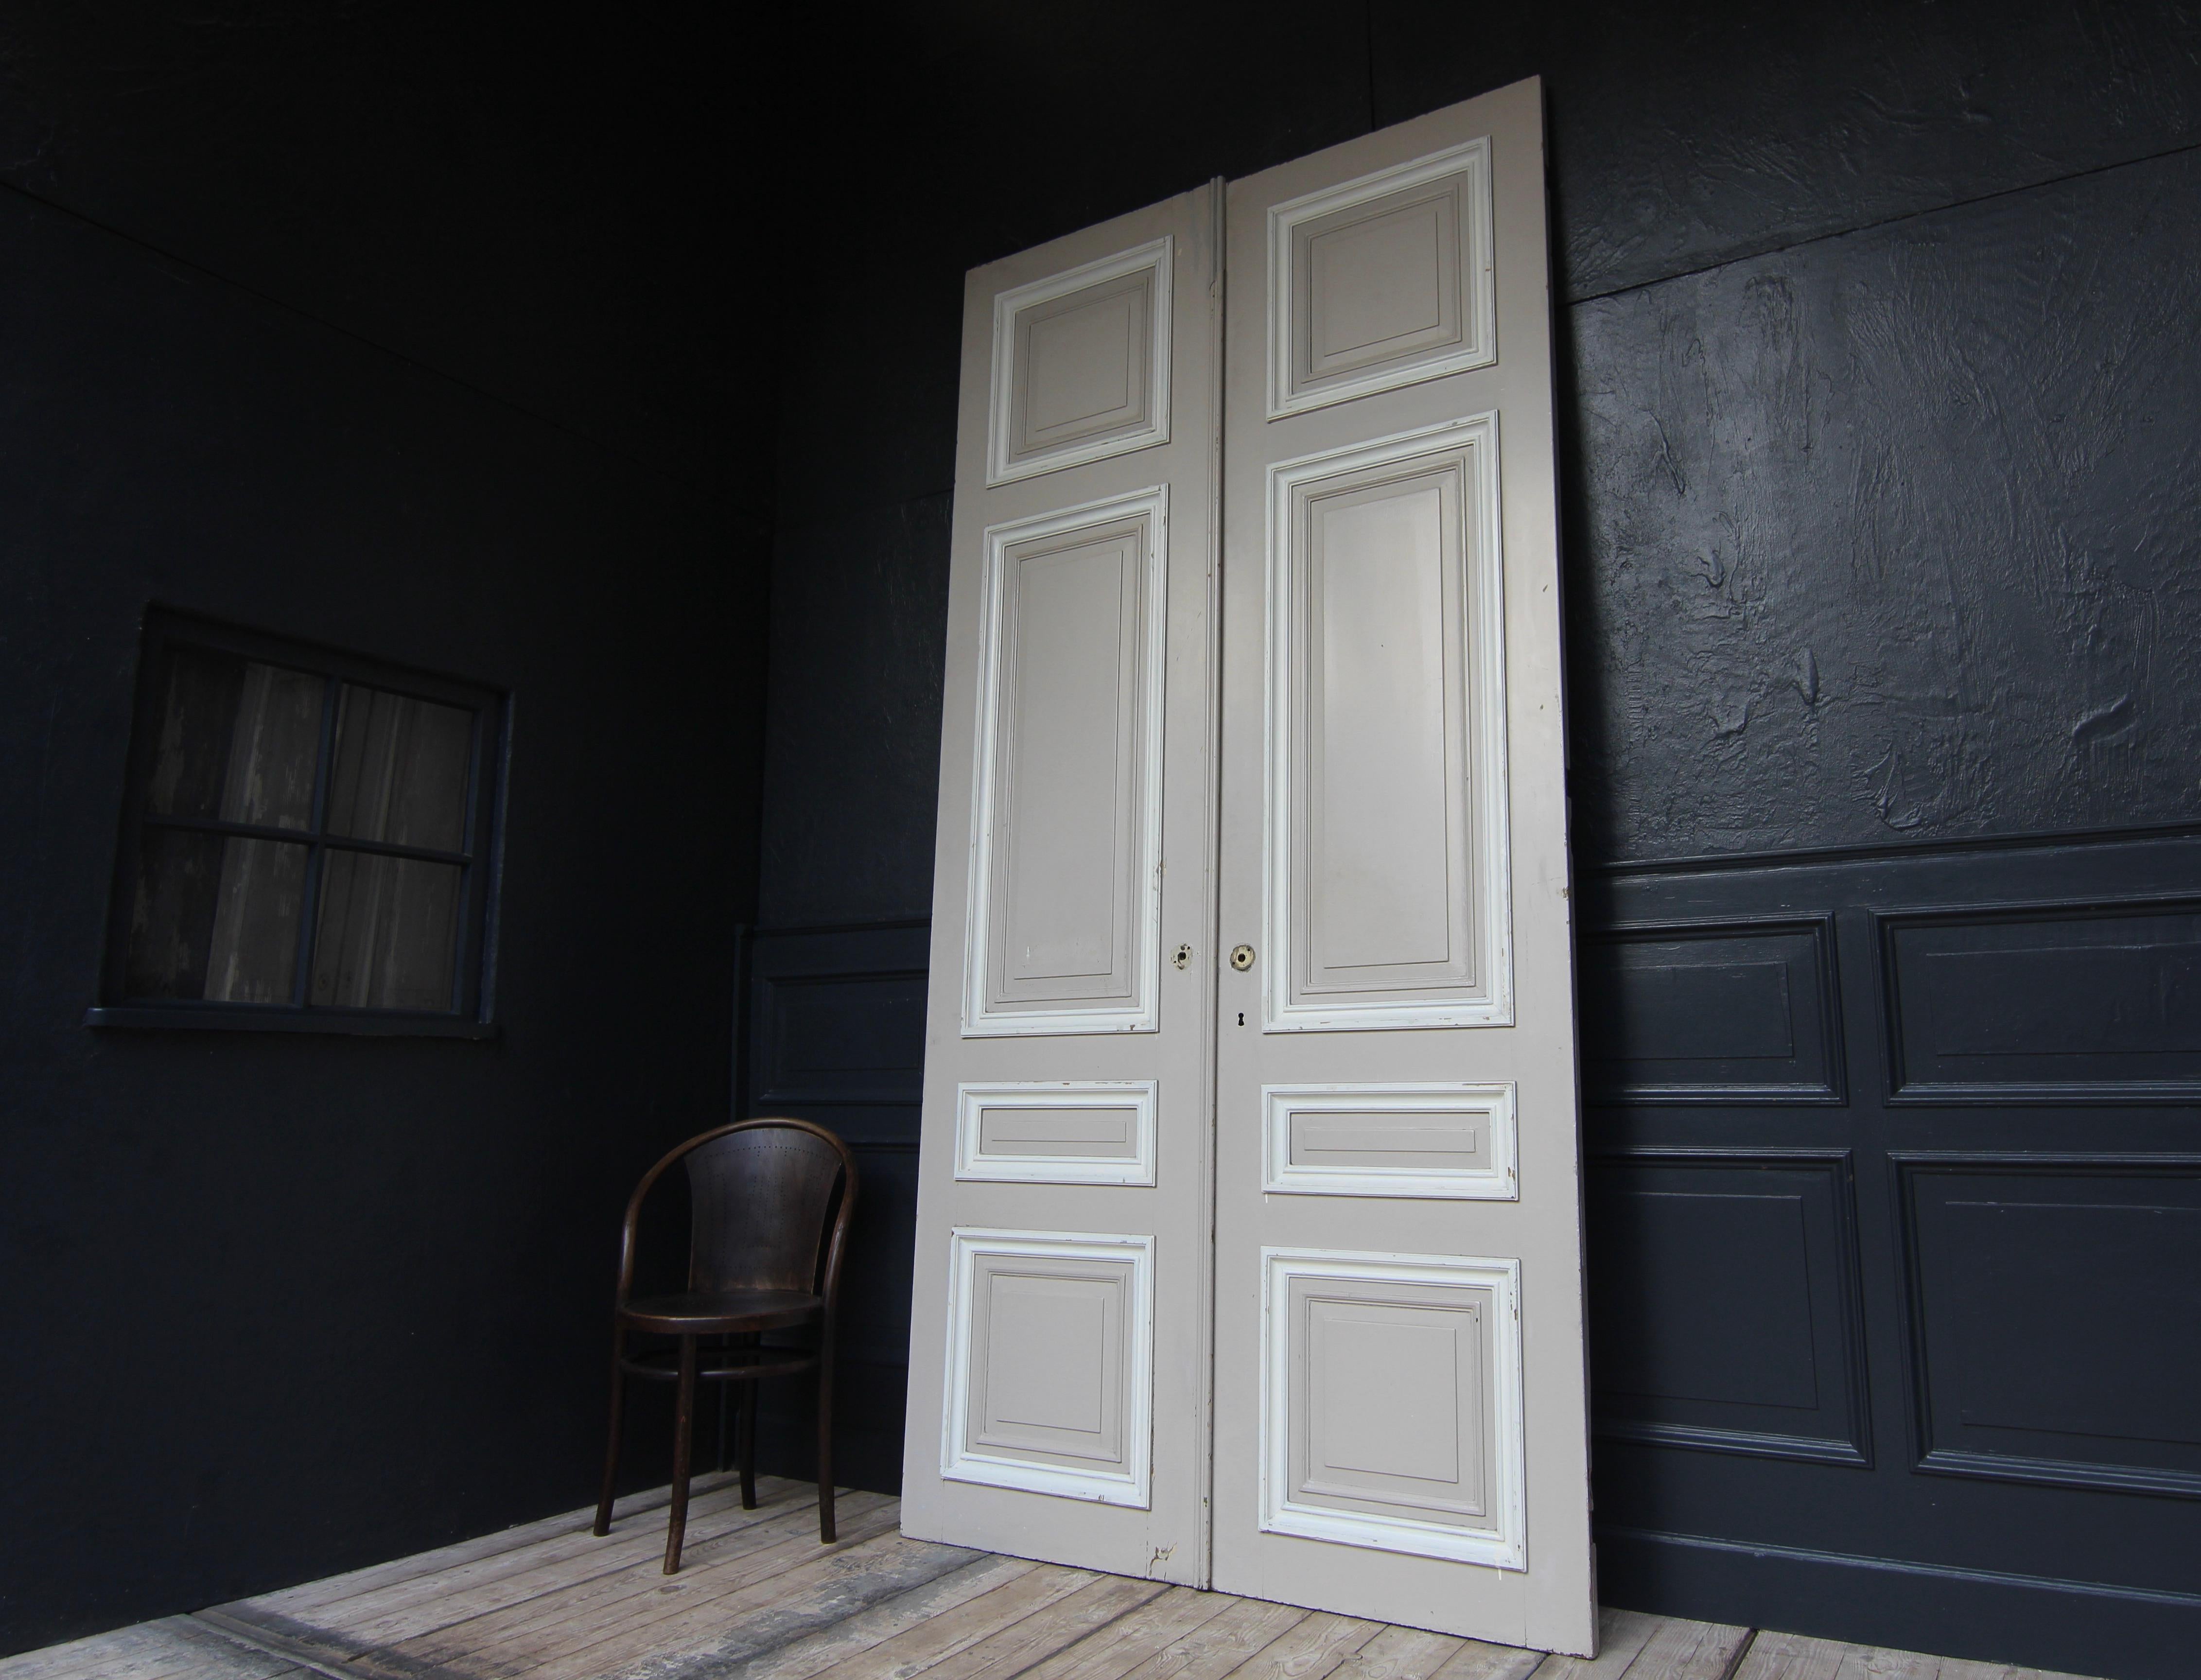 Hohe französische Doppeltür aus der 1. Hälfte des 20. Jahrhunderts. Hergestellt aus Eiche und lackiert. Unrestaurierter Zustand.

Doppeltür in Rahmenkonstruktion mit je 4 Kassettenfeldern.

Eine Seite in einer taupeartigen Farbe, die andere Seite in